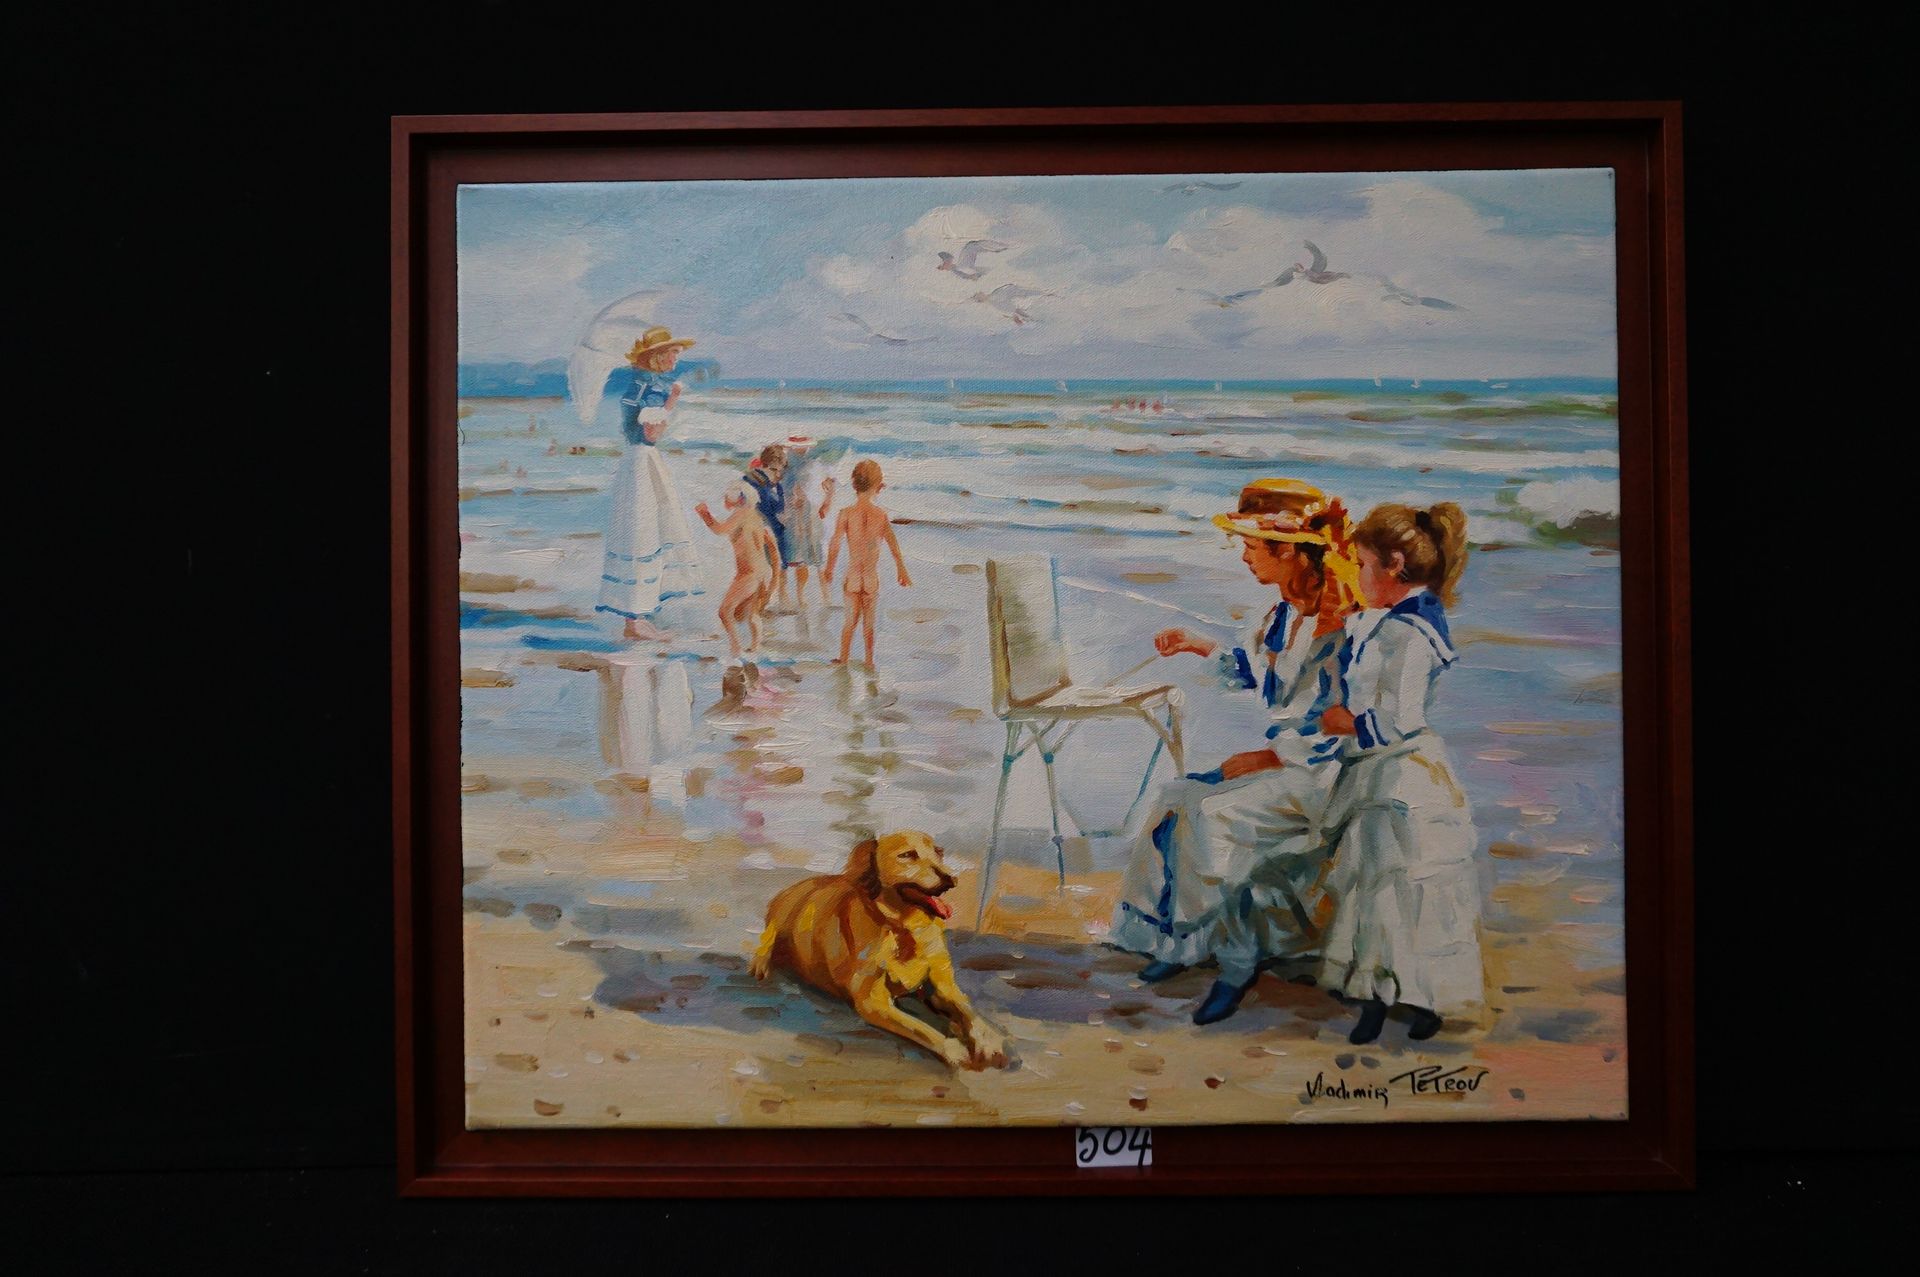 PETROV (1945 - ) "Sonntag am Strand" - Öl auf Leinwand - Signiert - 50 x 60 cm